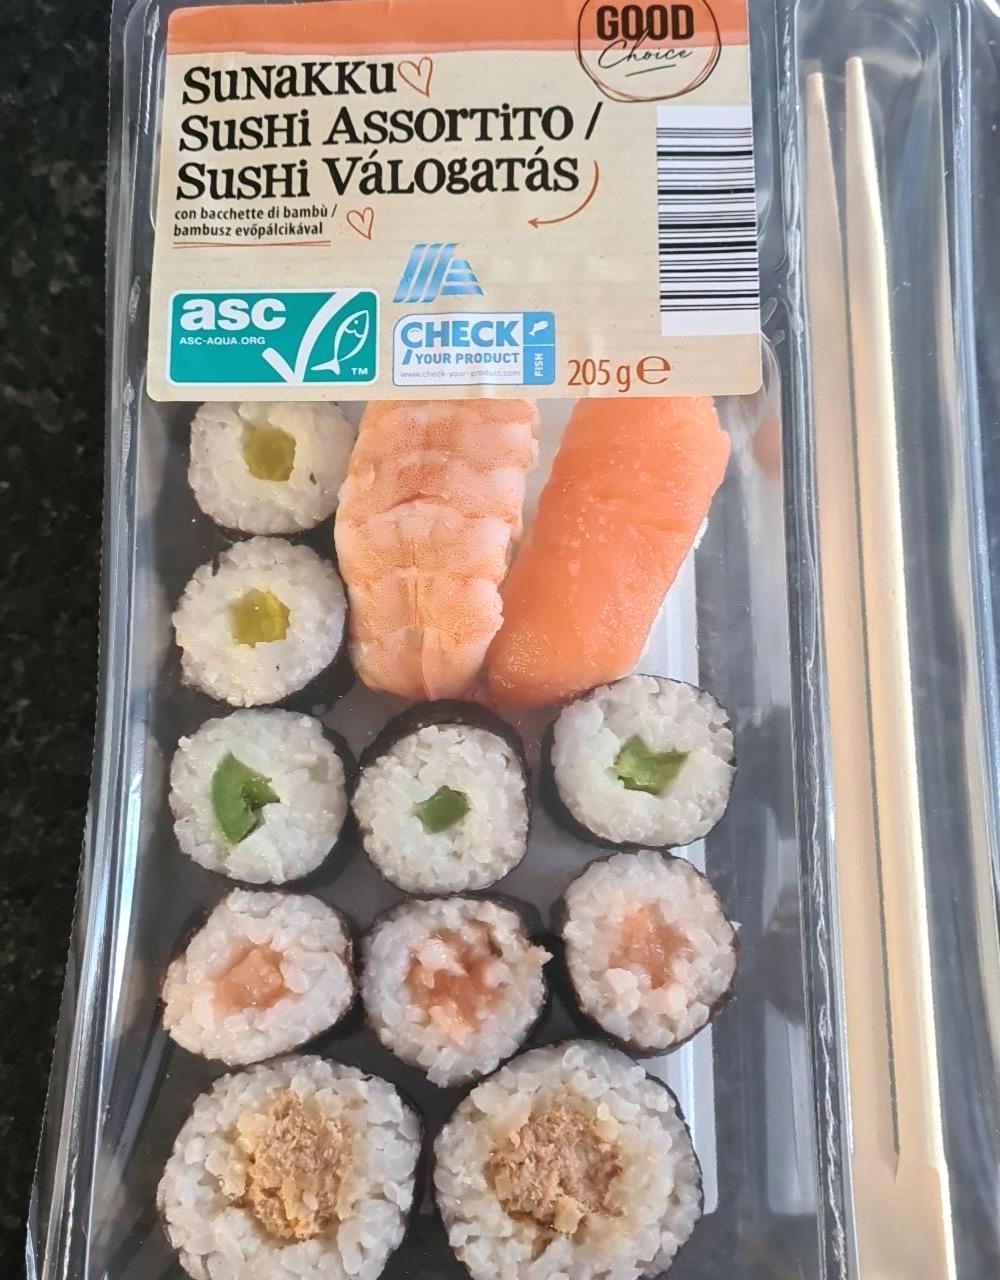 Képek - Sushi válogatás Sunakku Good Choice